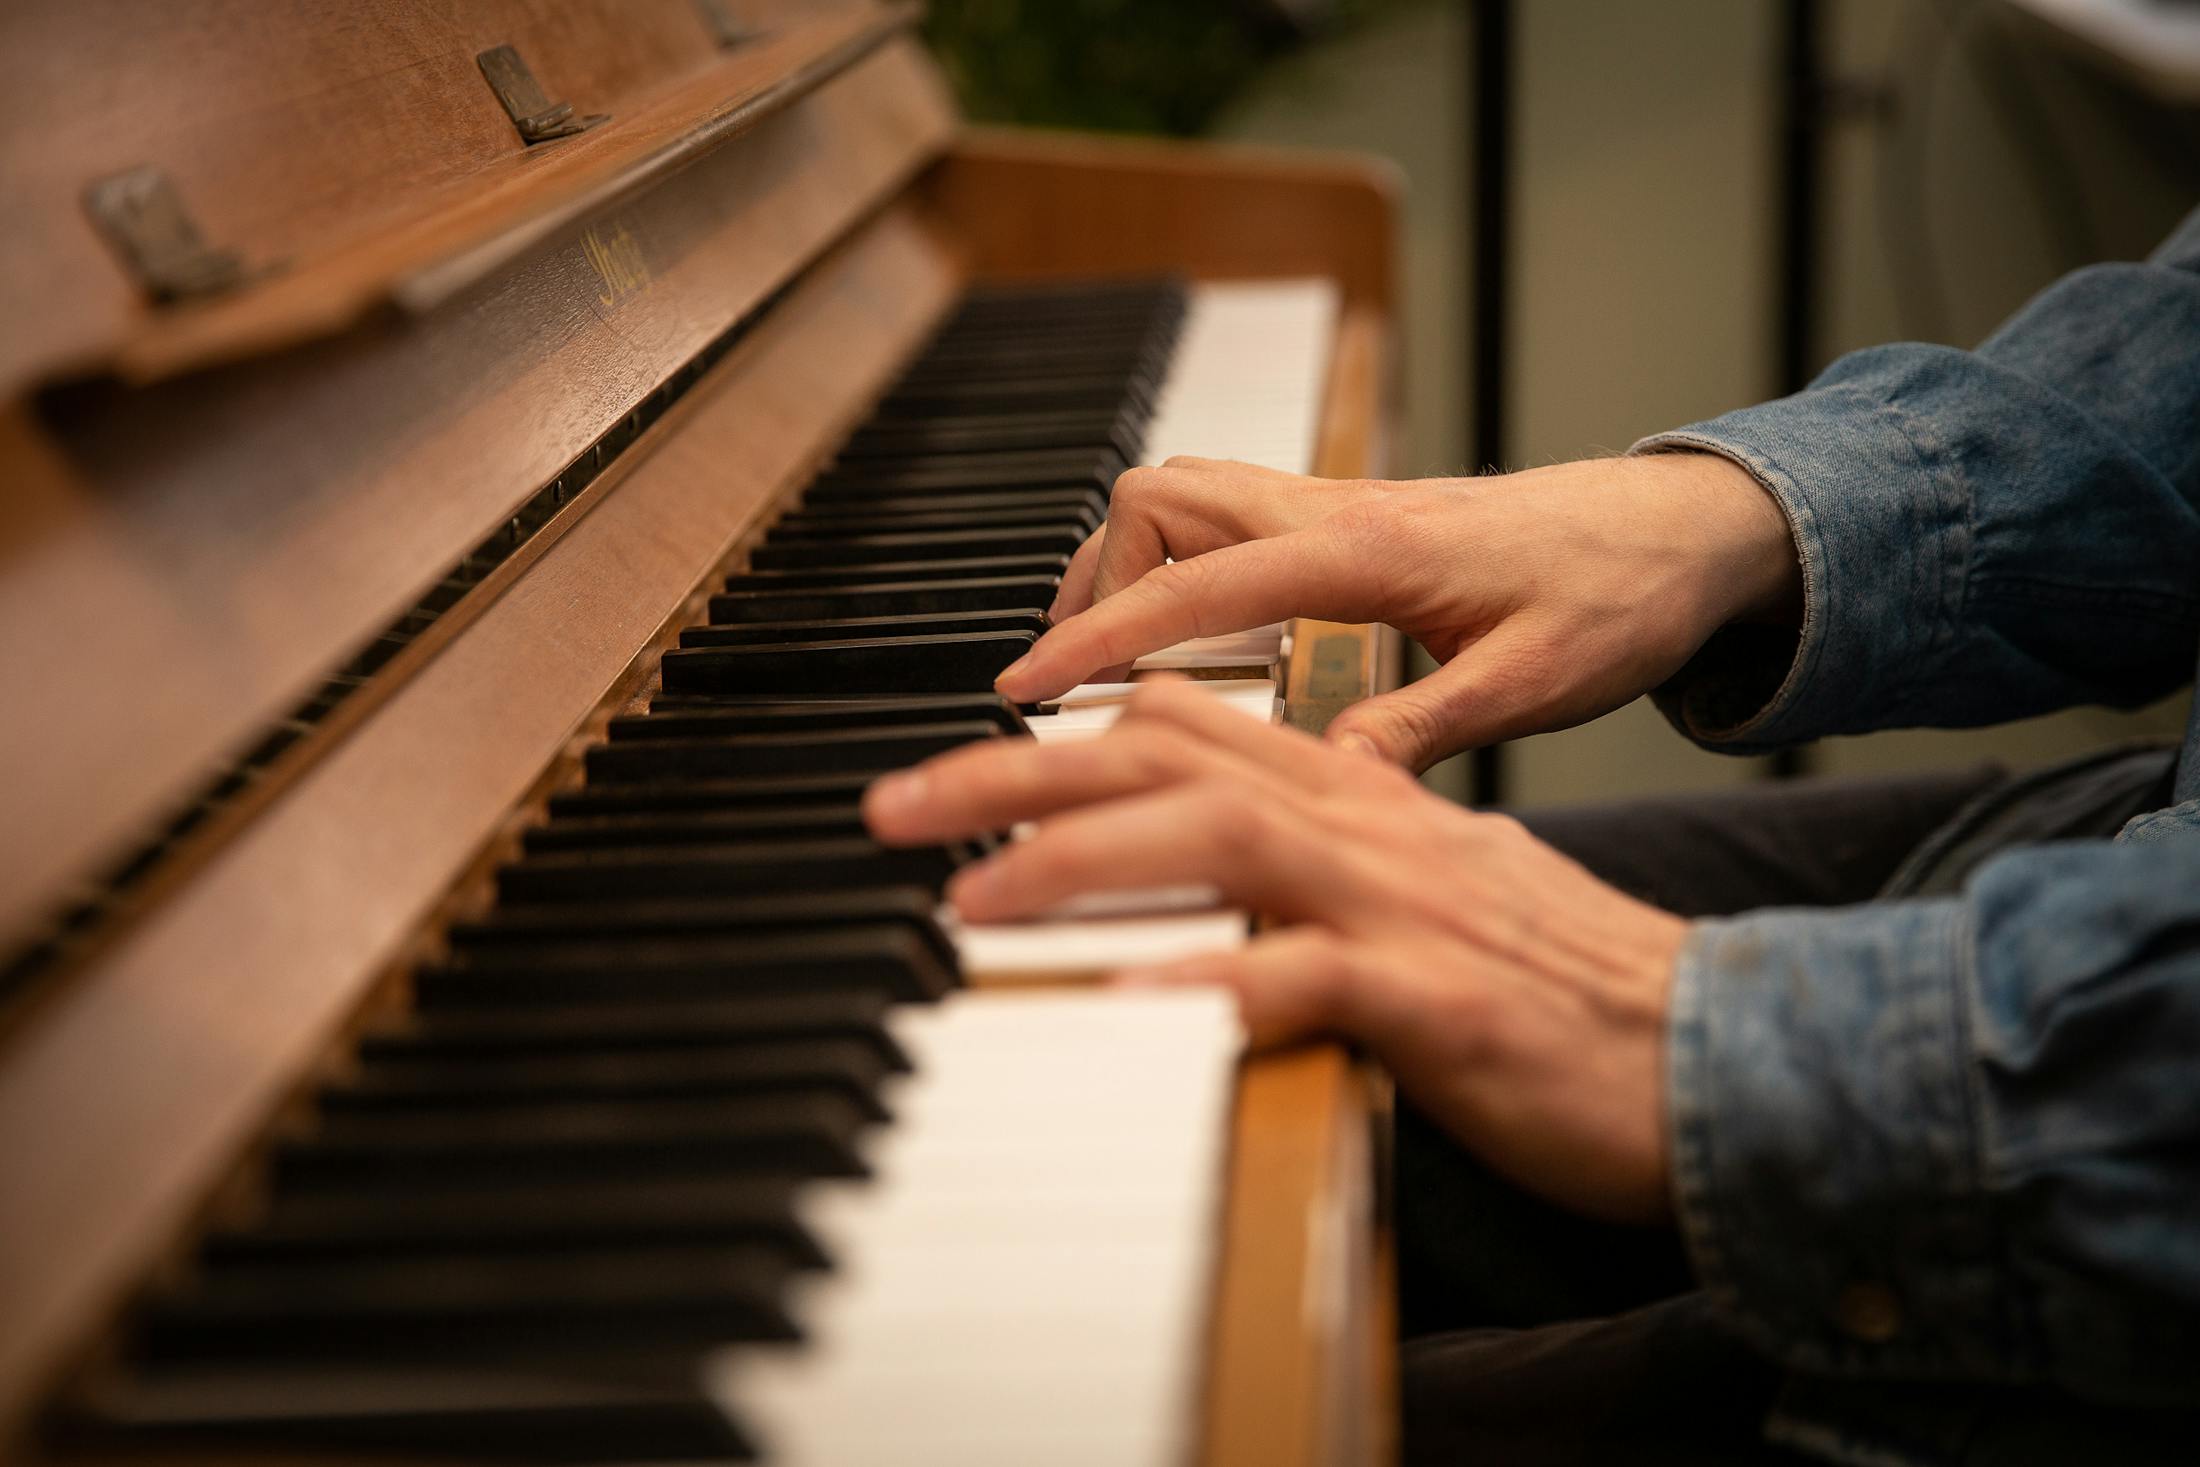 Utvalget av elektriske og akustiske pianoer er det ingenting å si på. Her spiller Vinje på en piano han kjøpte av Bengt Egil Hanssen. Foto: Tord Litleskare